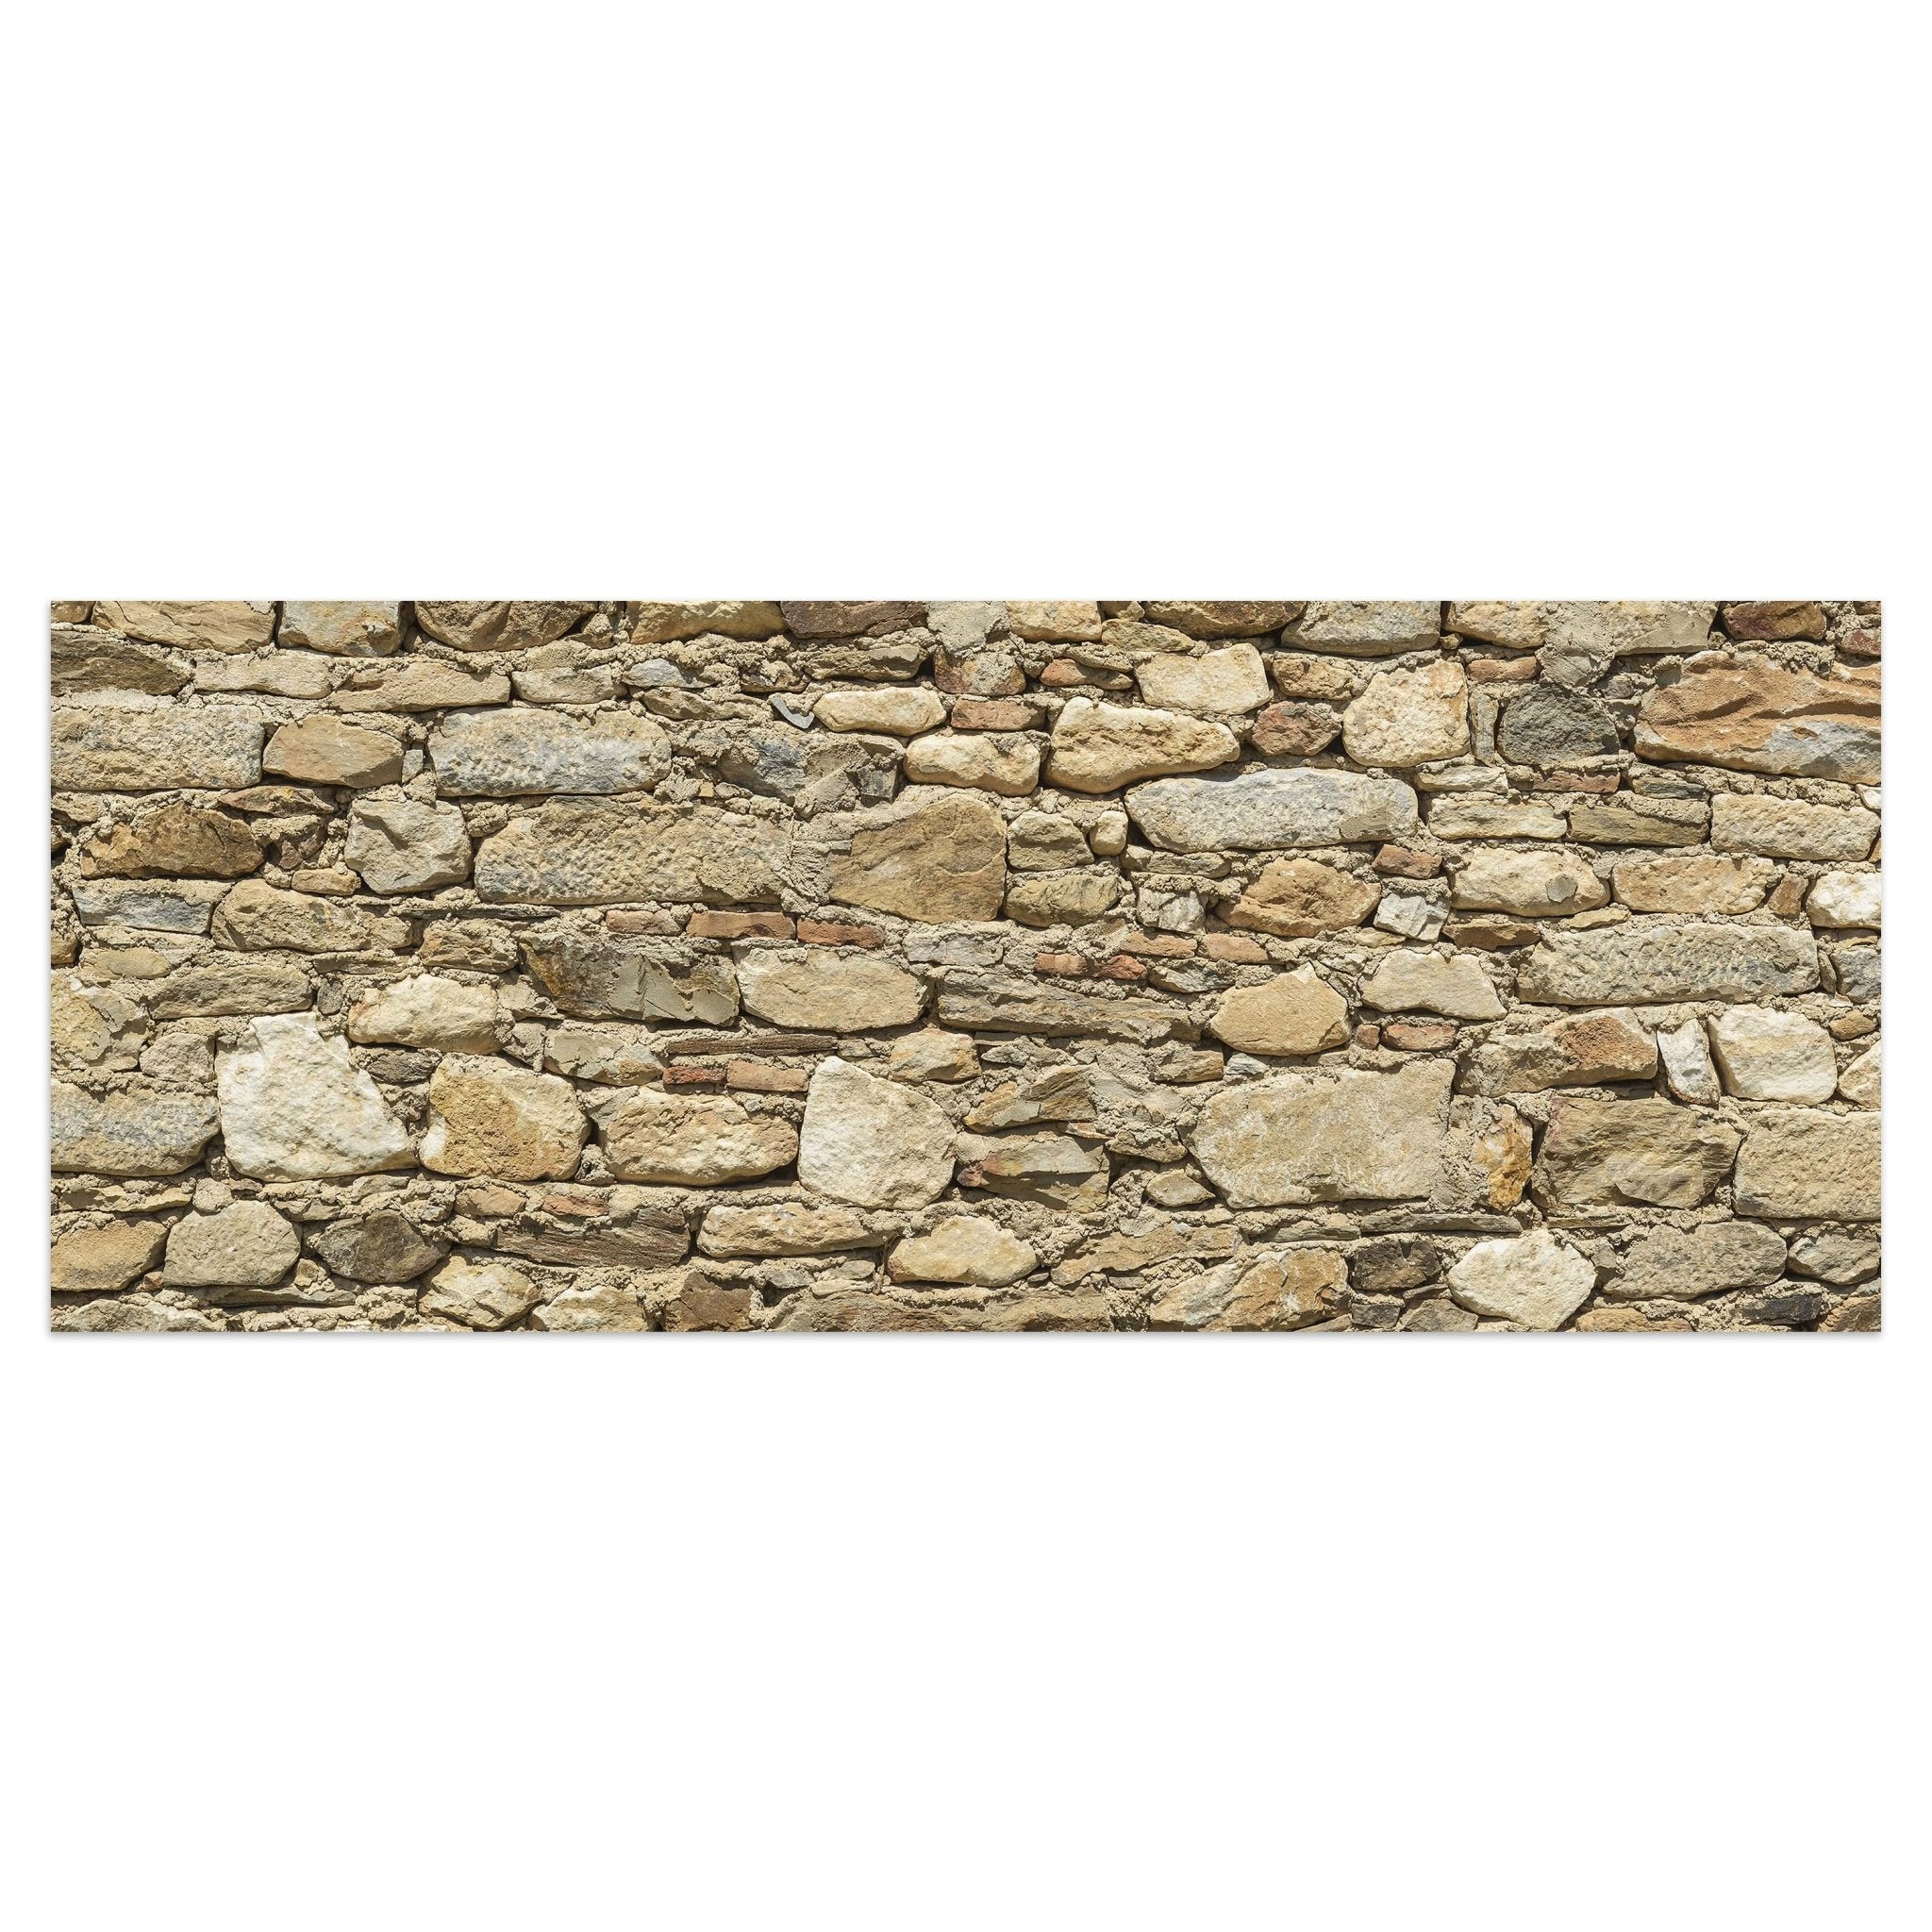 Leinwandbild Alte Steinmauer M0939 kaufen - Bild 1